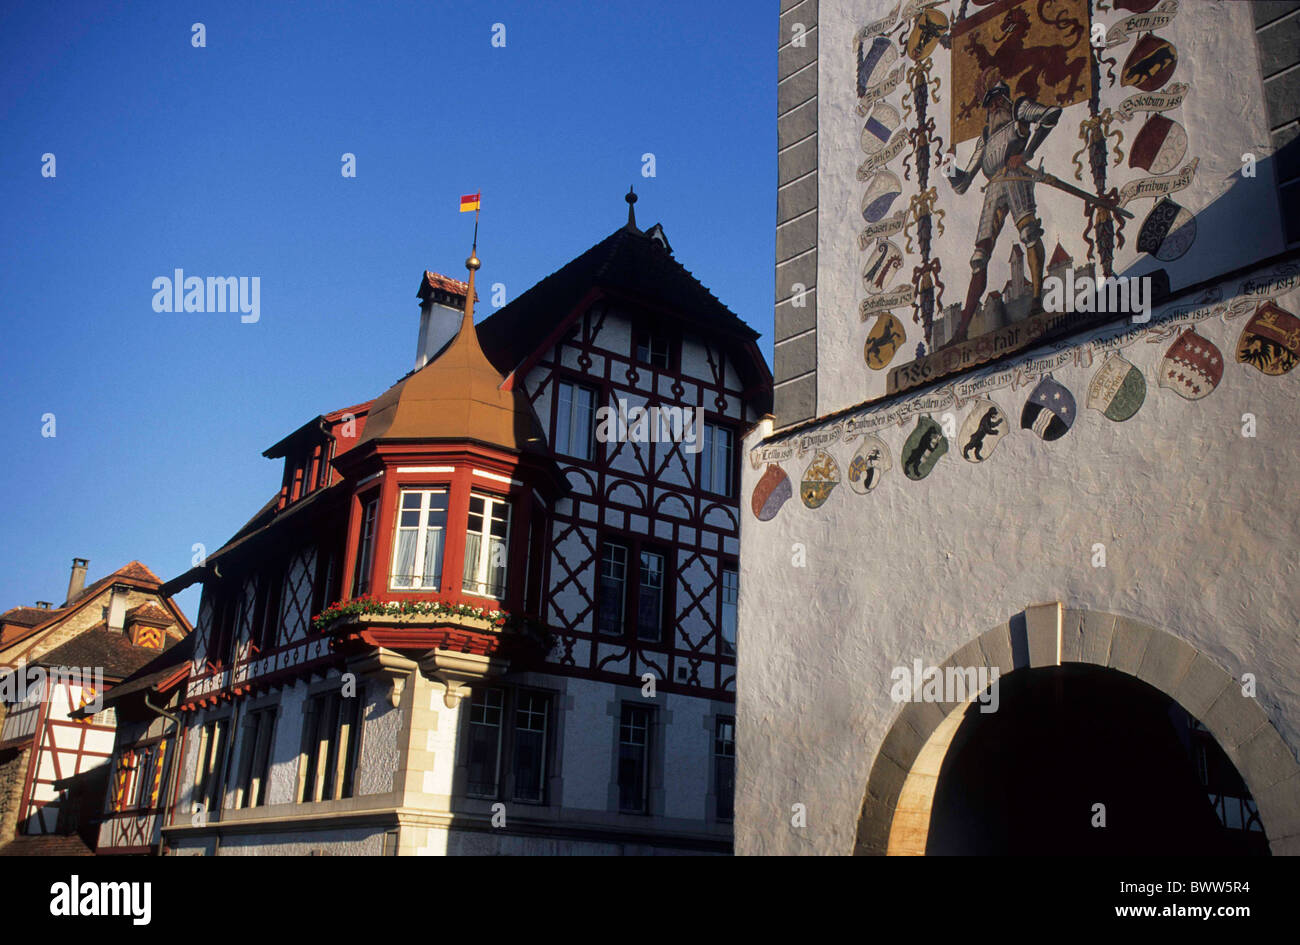 Suisse Europe canton de Lucerne Sempach town gate en façade peinte de la baie vitrée ossature bois ha Banque D'Images